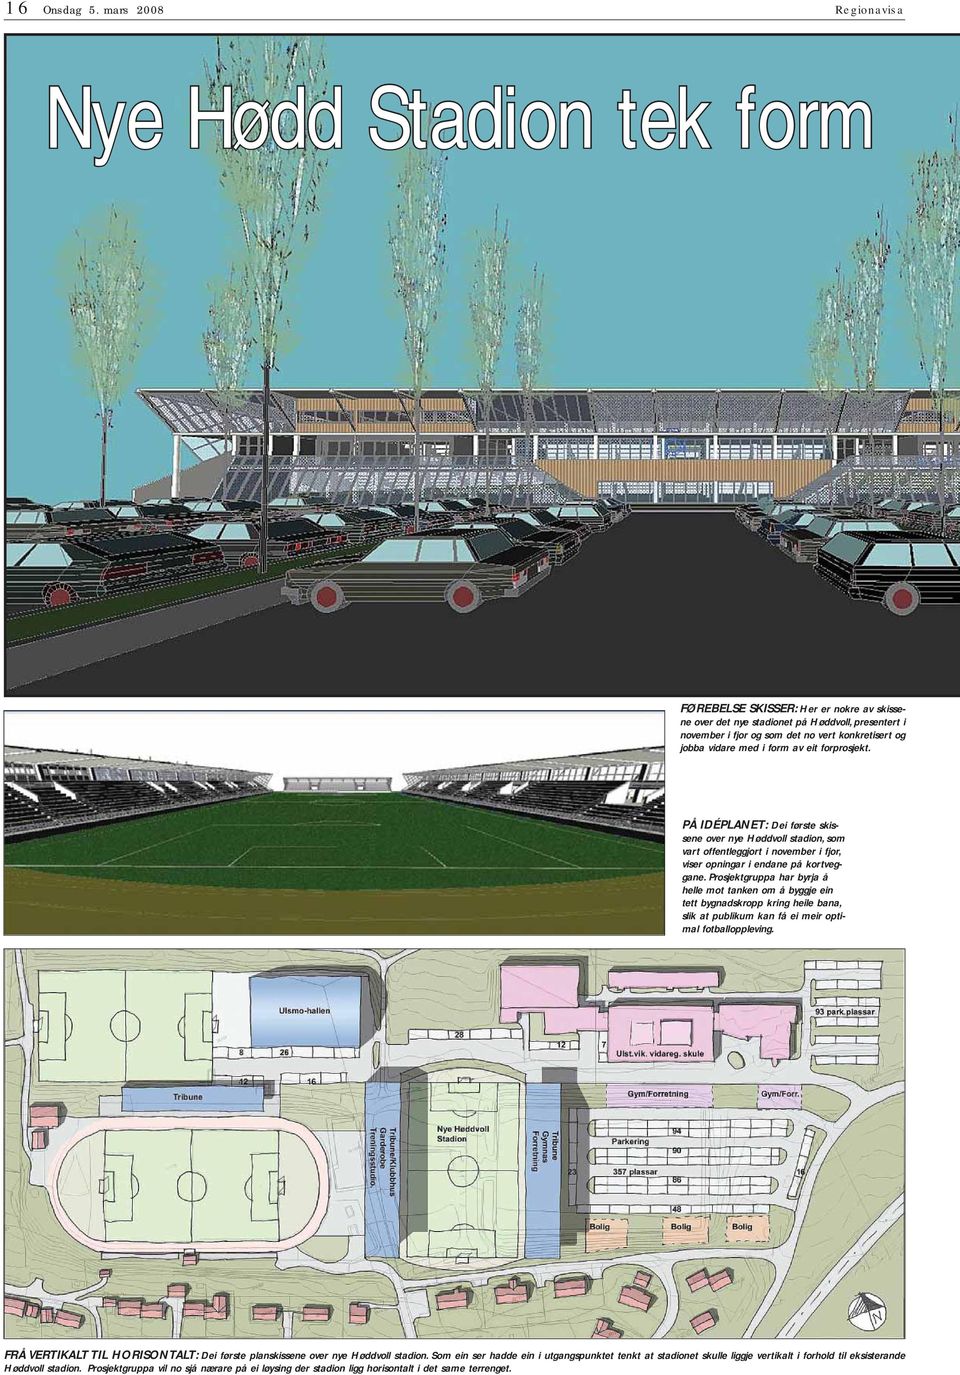 av eit forprosjekt. PÅ ÉP: ei første skissene over nye Høddvoll stadion, som vart offentleggjort i november i fjor, viser opningar i endane på kortveggane.